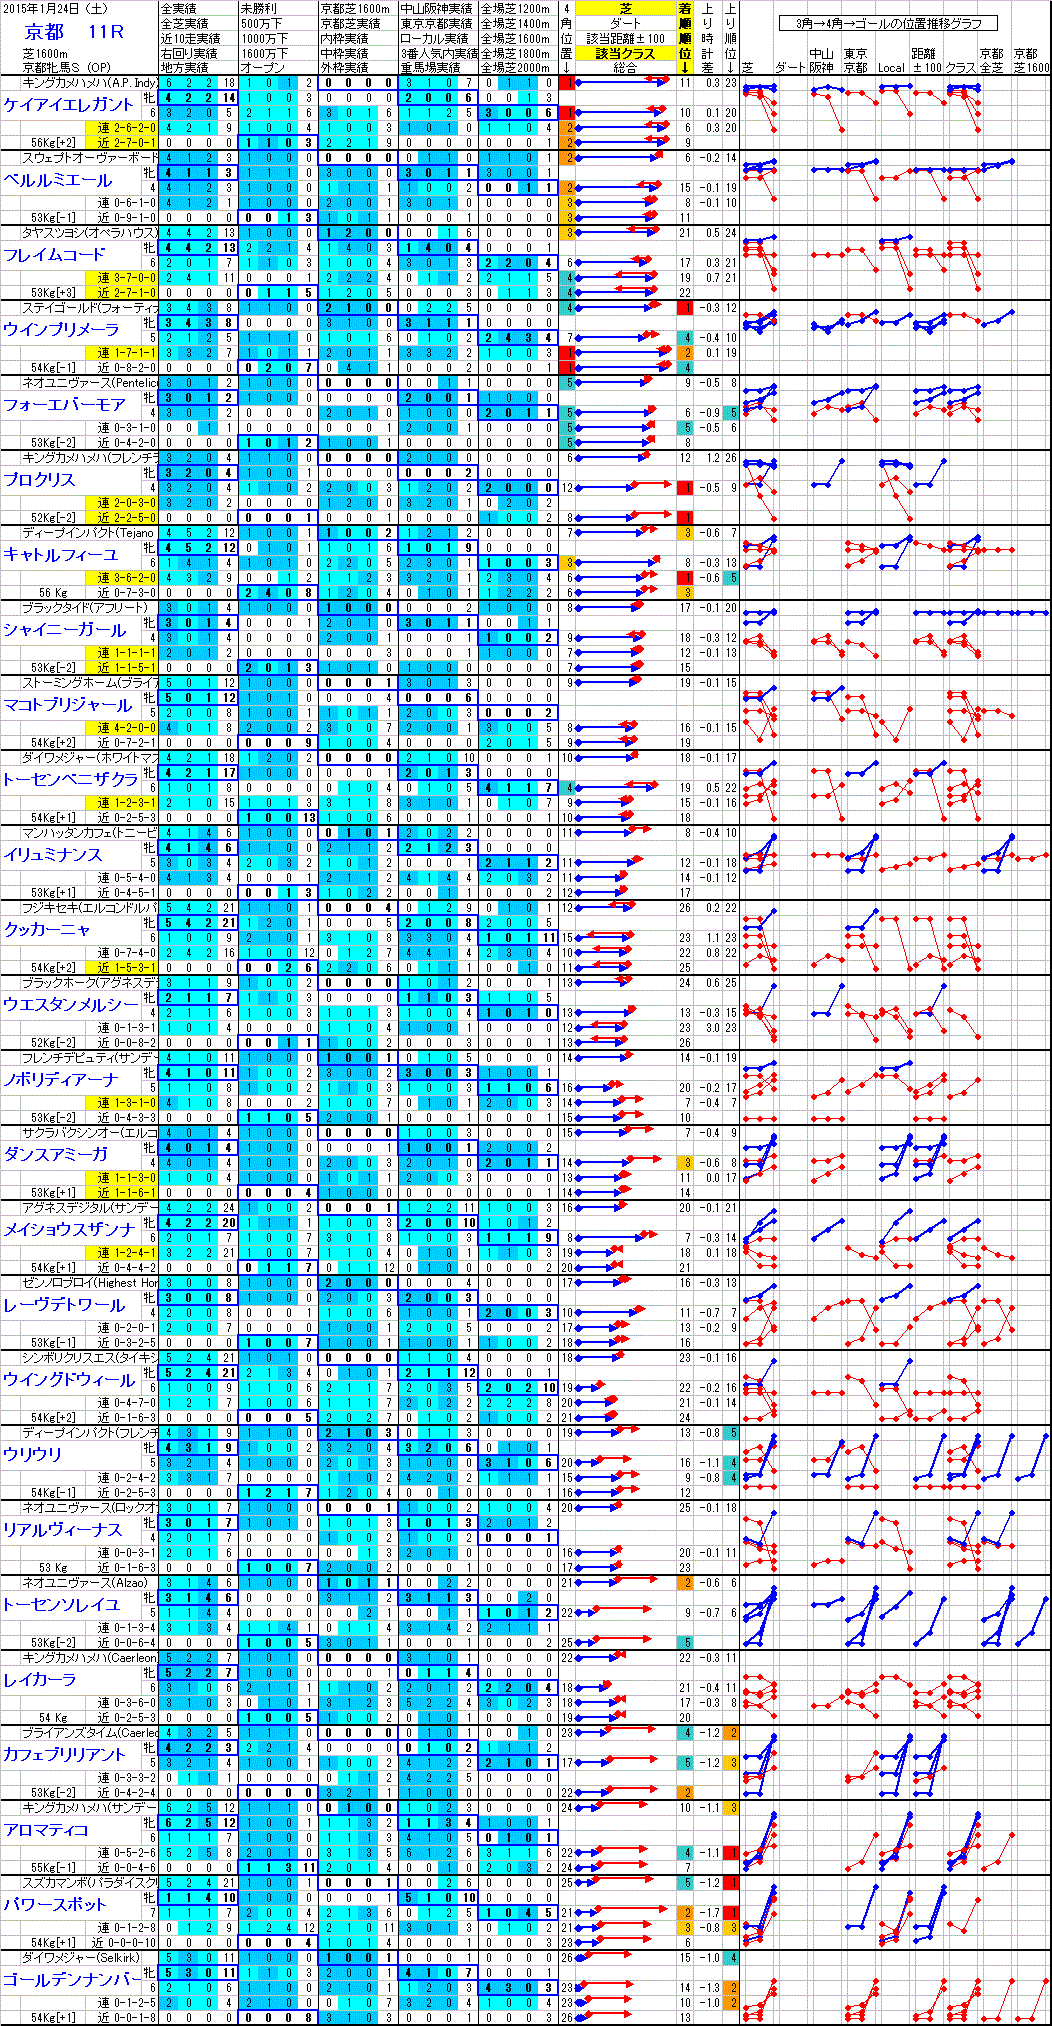 京都 2015年1月24日 （土） ： 11R － 分析データ